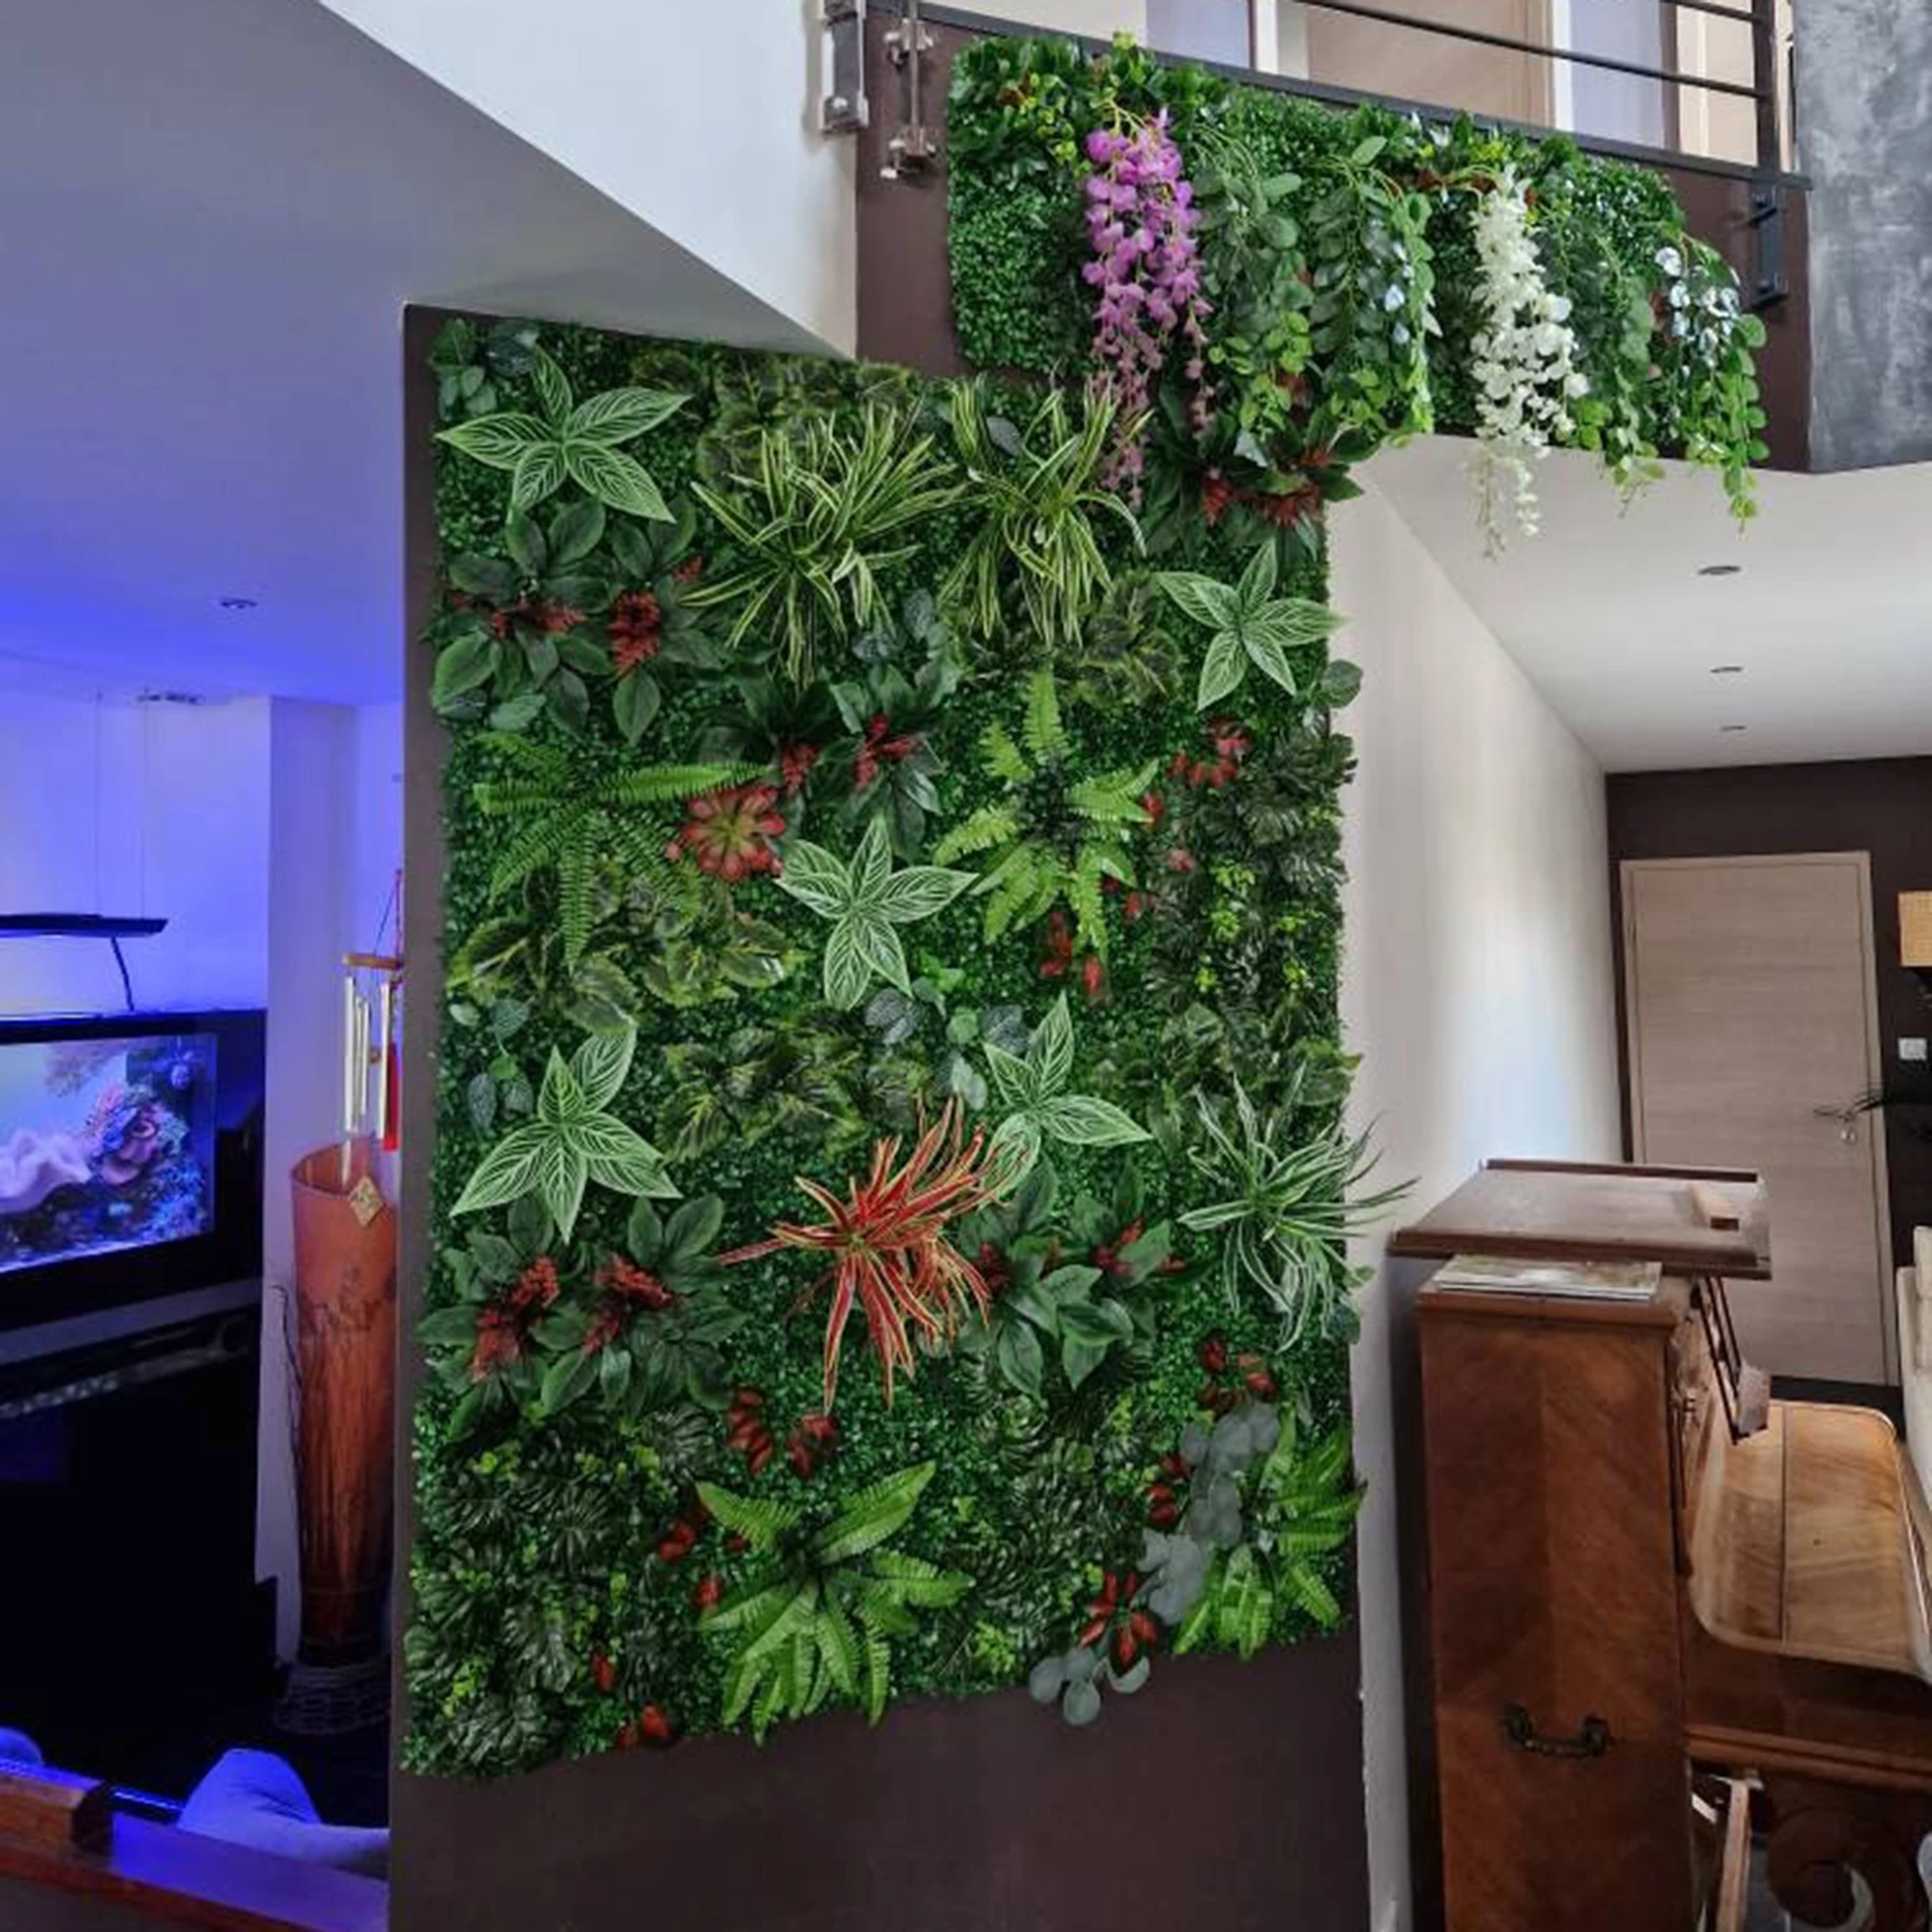 

Украшение для дома, искусственное растение 15,74*23,62 дюйма, настенное ландшафтное украшение для стен, панель для газона, настенная травяная панель